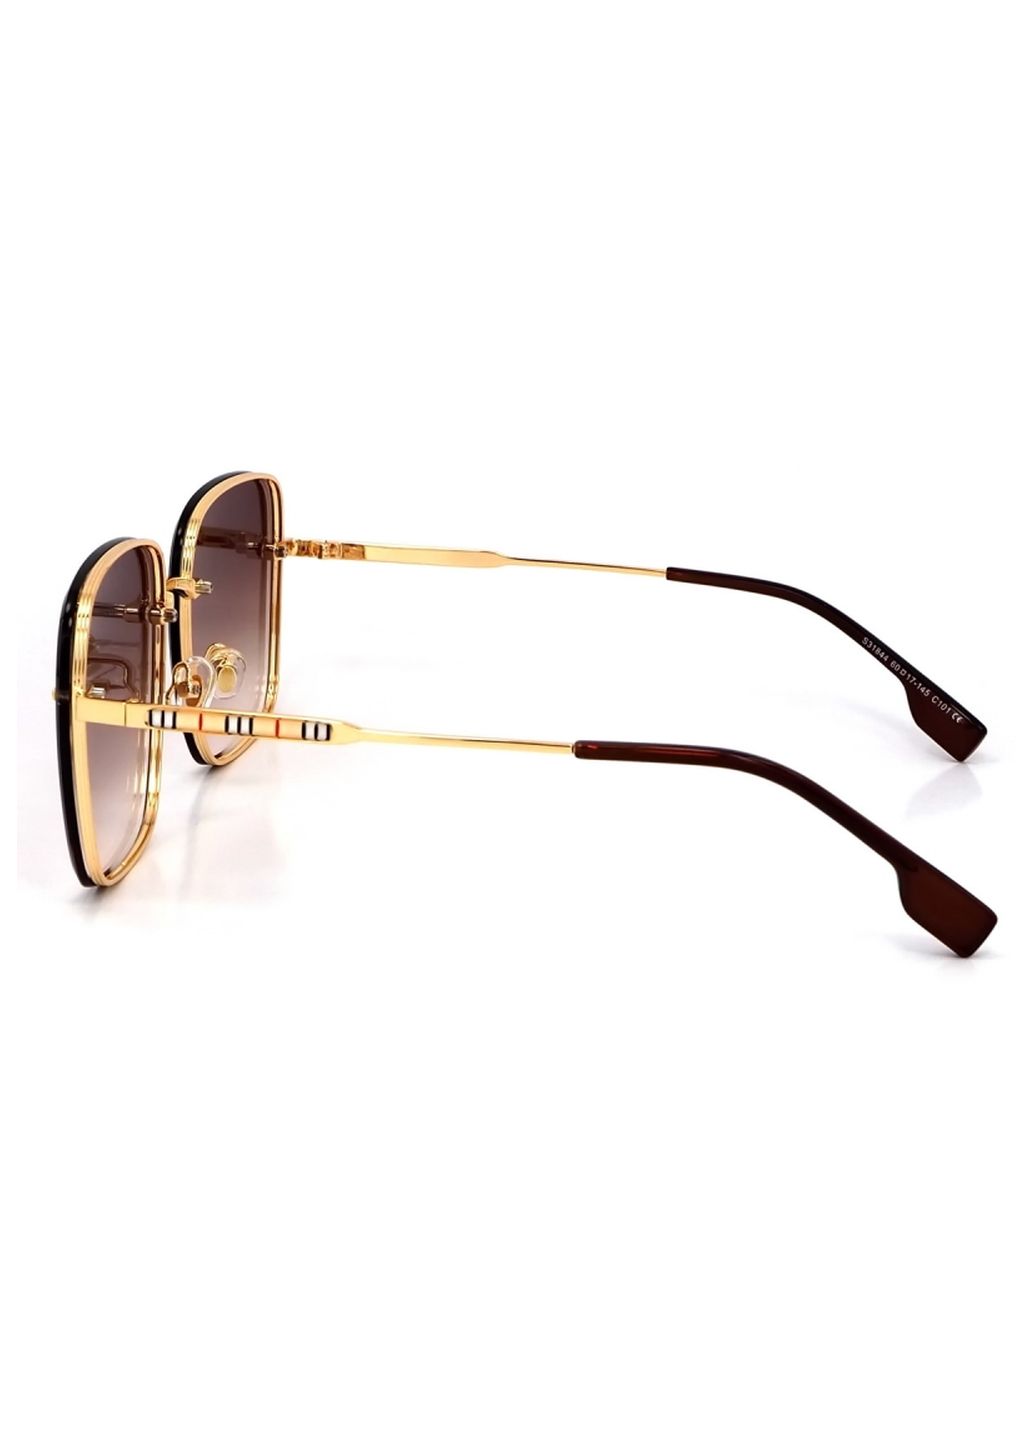 Купить Женские солнцезащитные очки Merlini с поляризацией S31844 117135 - Золотистый в интернет-магазине